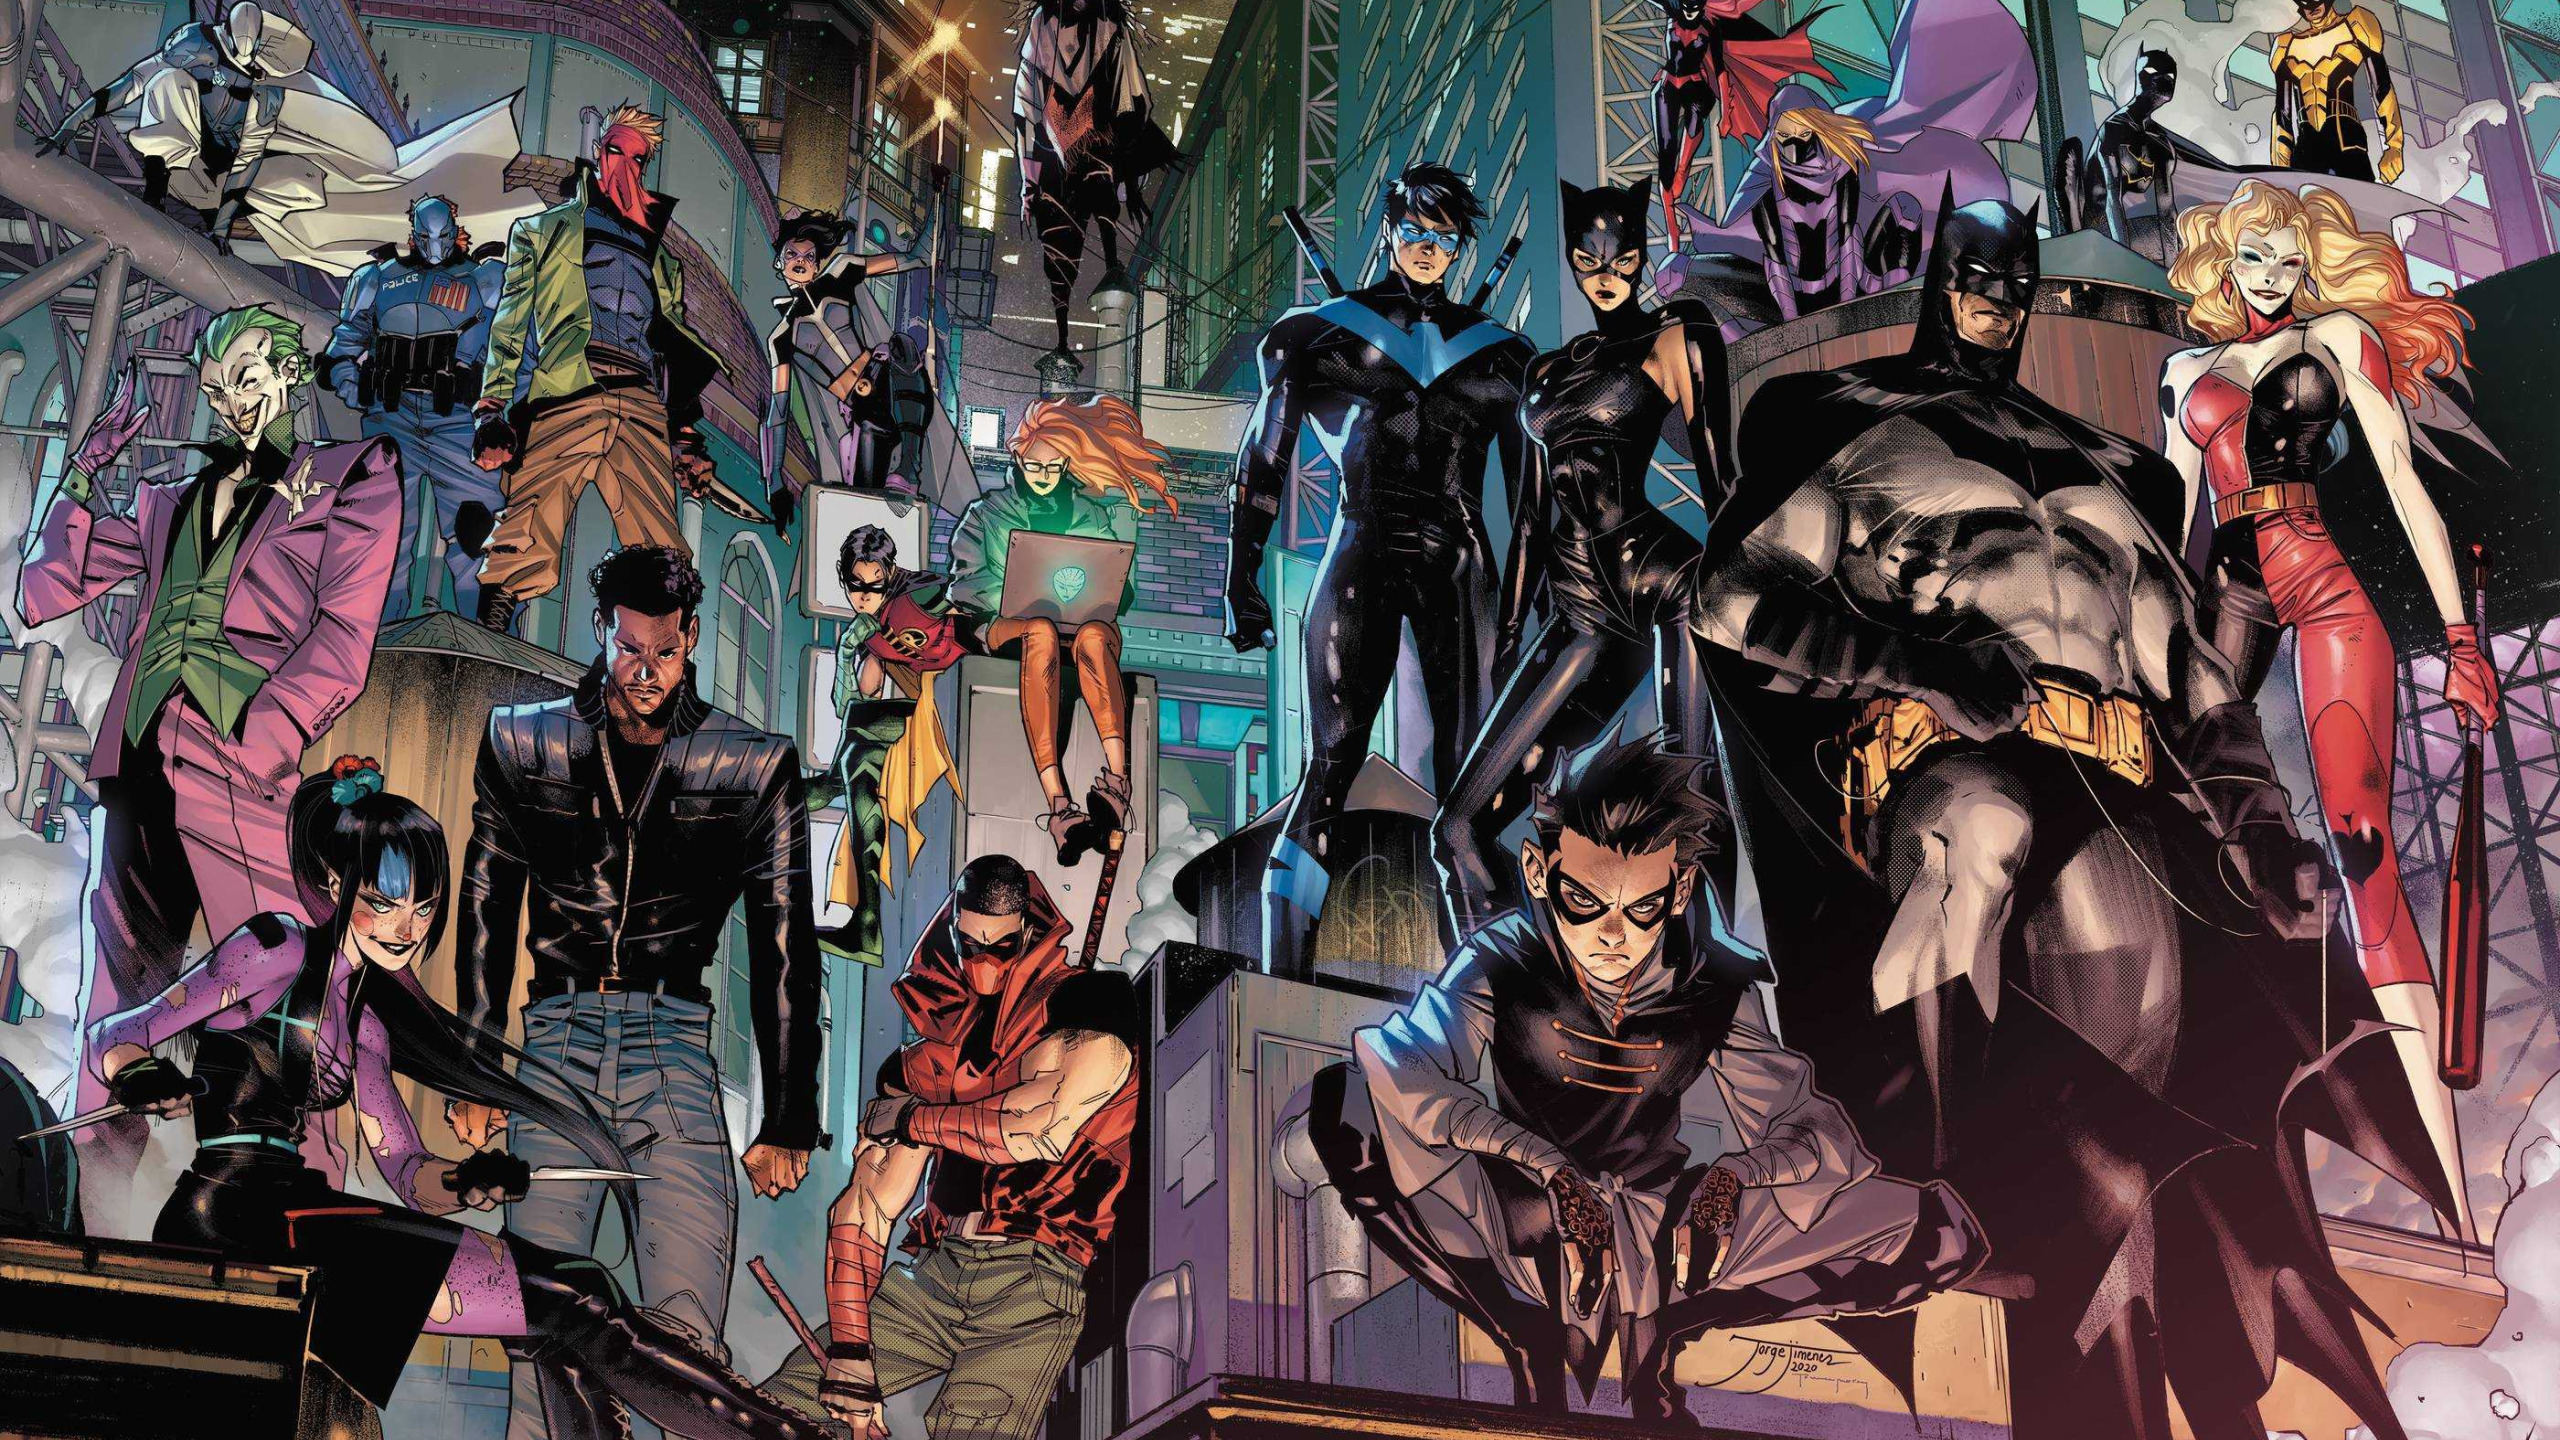 Justice League Batman iPad Wallpaper in 2023  Batman wallpaper, Batman  pictures, Batman comic art